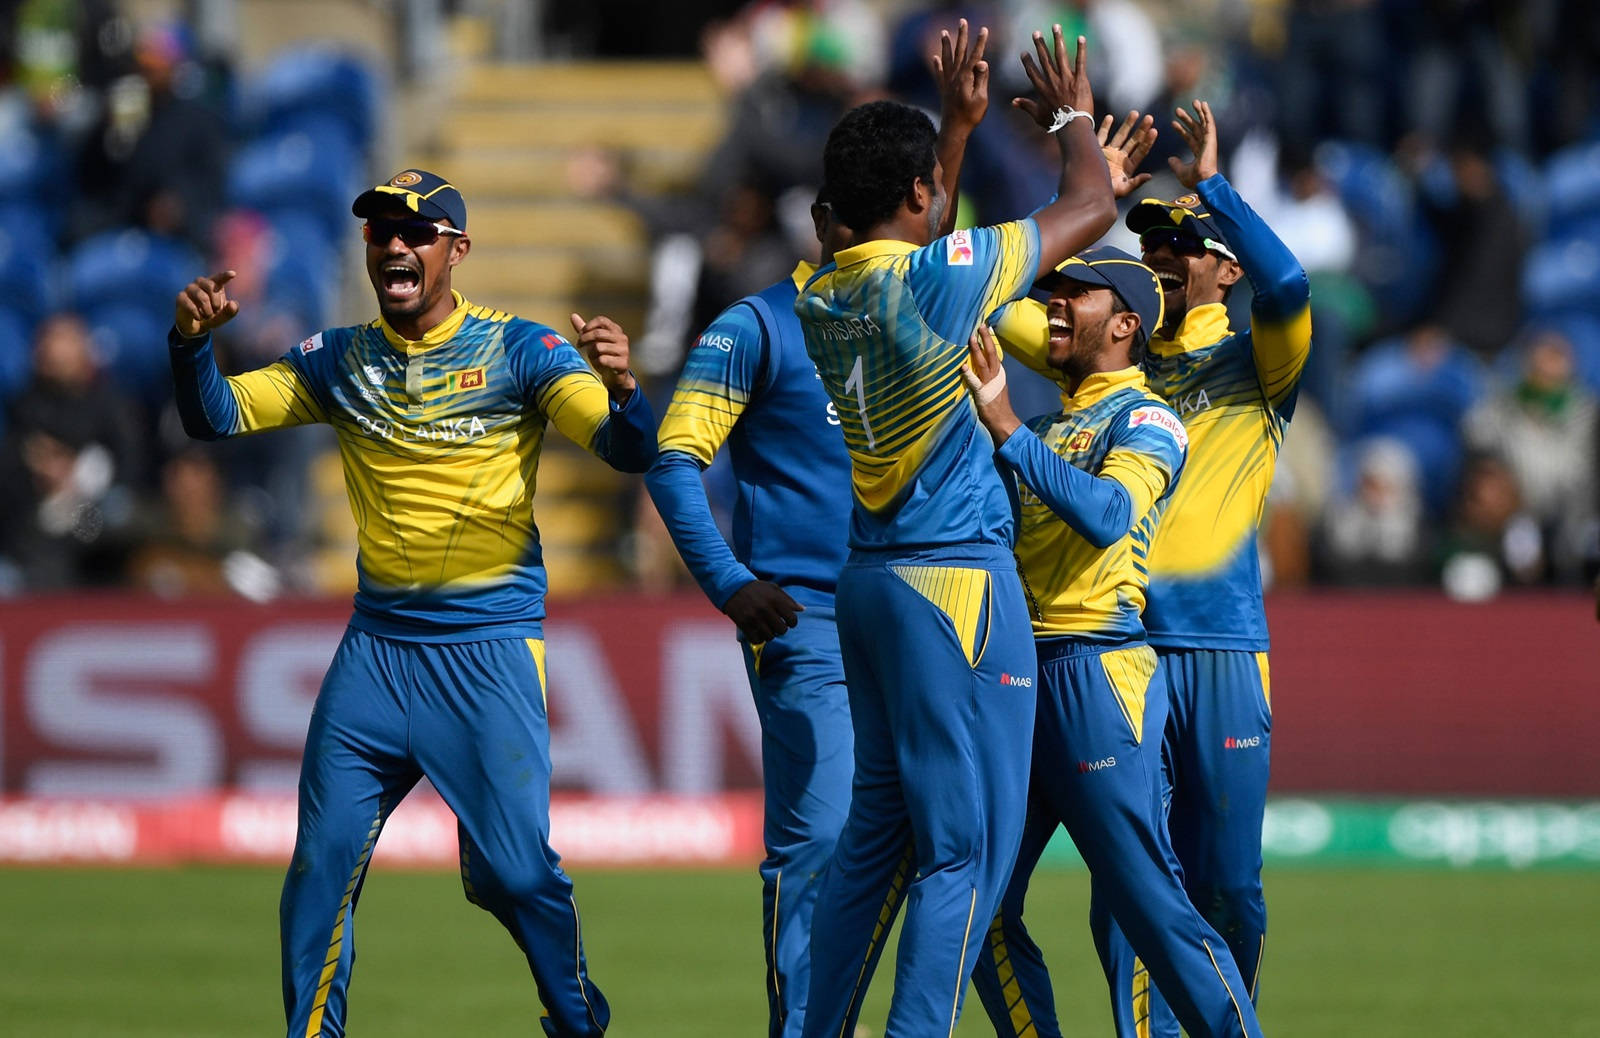 Sri Lanka Cricket Victory Snapshot Tapet: Del glæden fra Sri Lanka Cricket's sejr med dette livsbekræftende tapet. Wallpaper